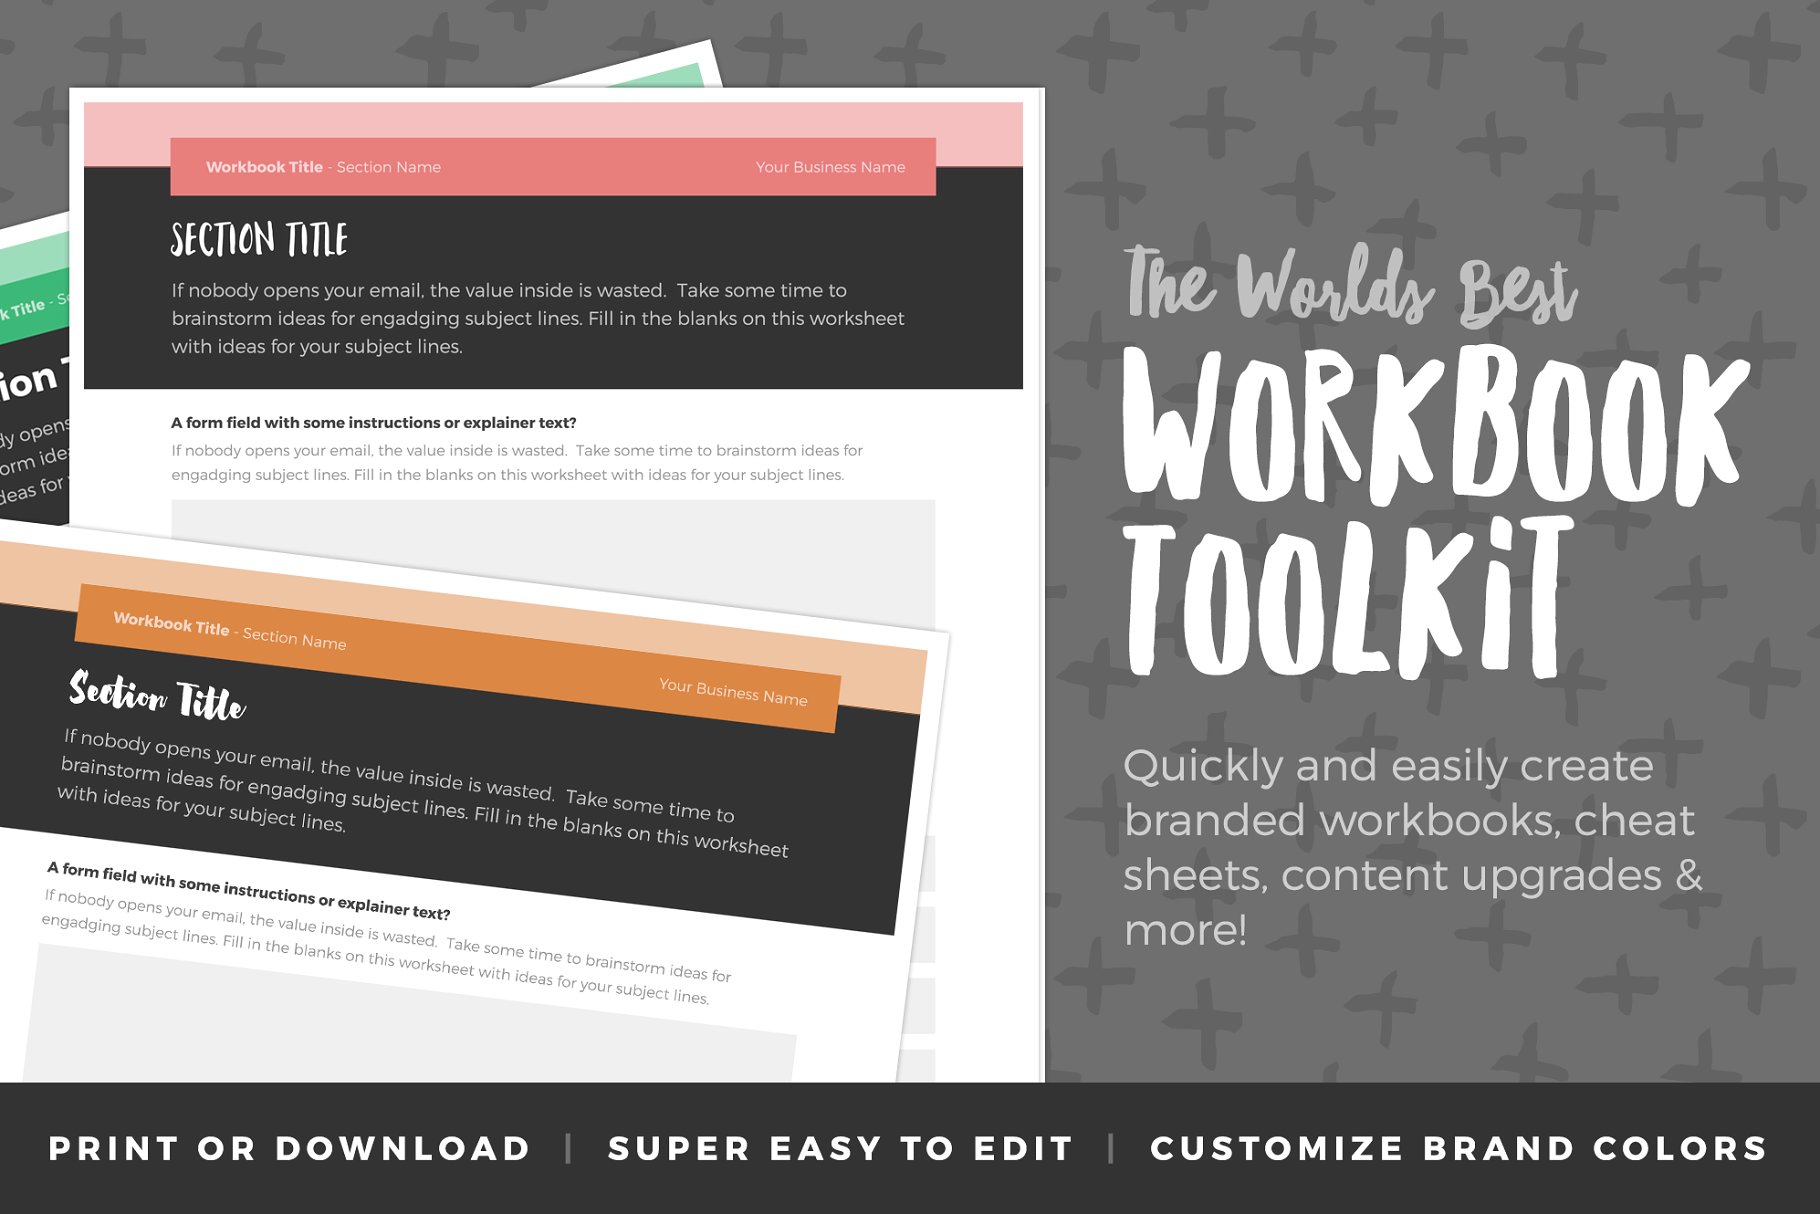 公司产品咨询调查问卷模板 Workbook Toolkit Vol 3插图